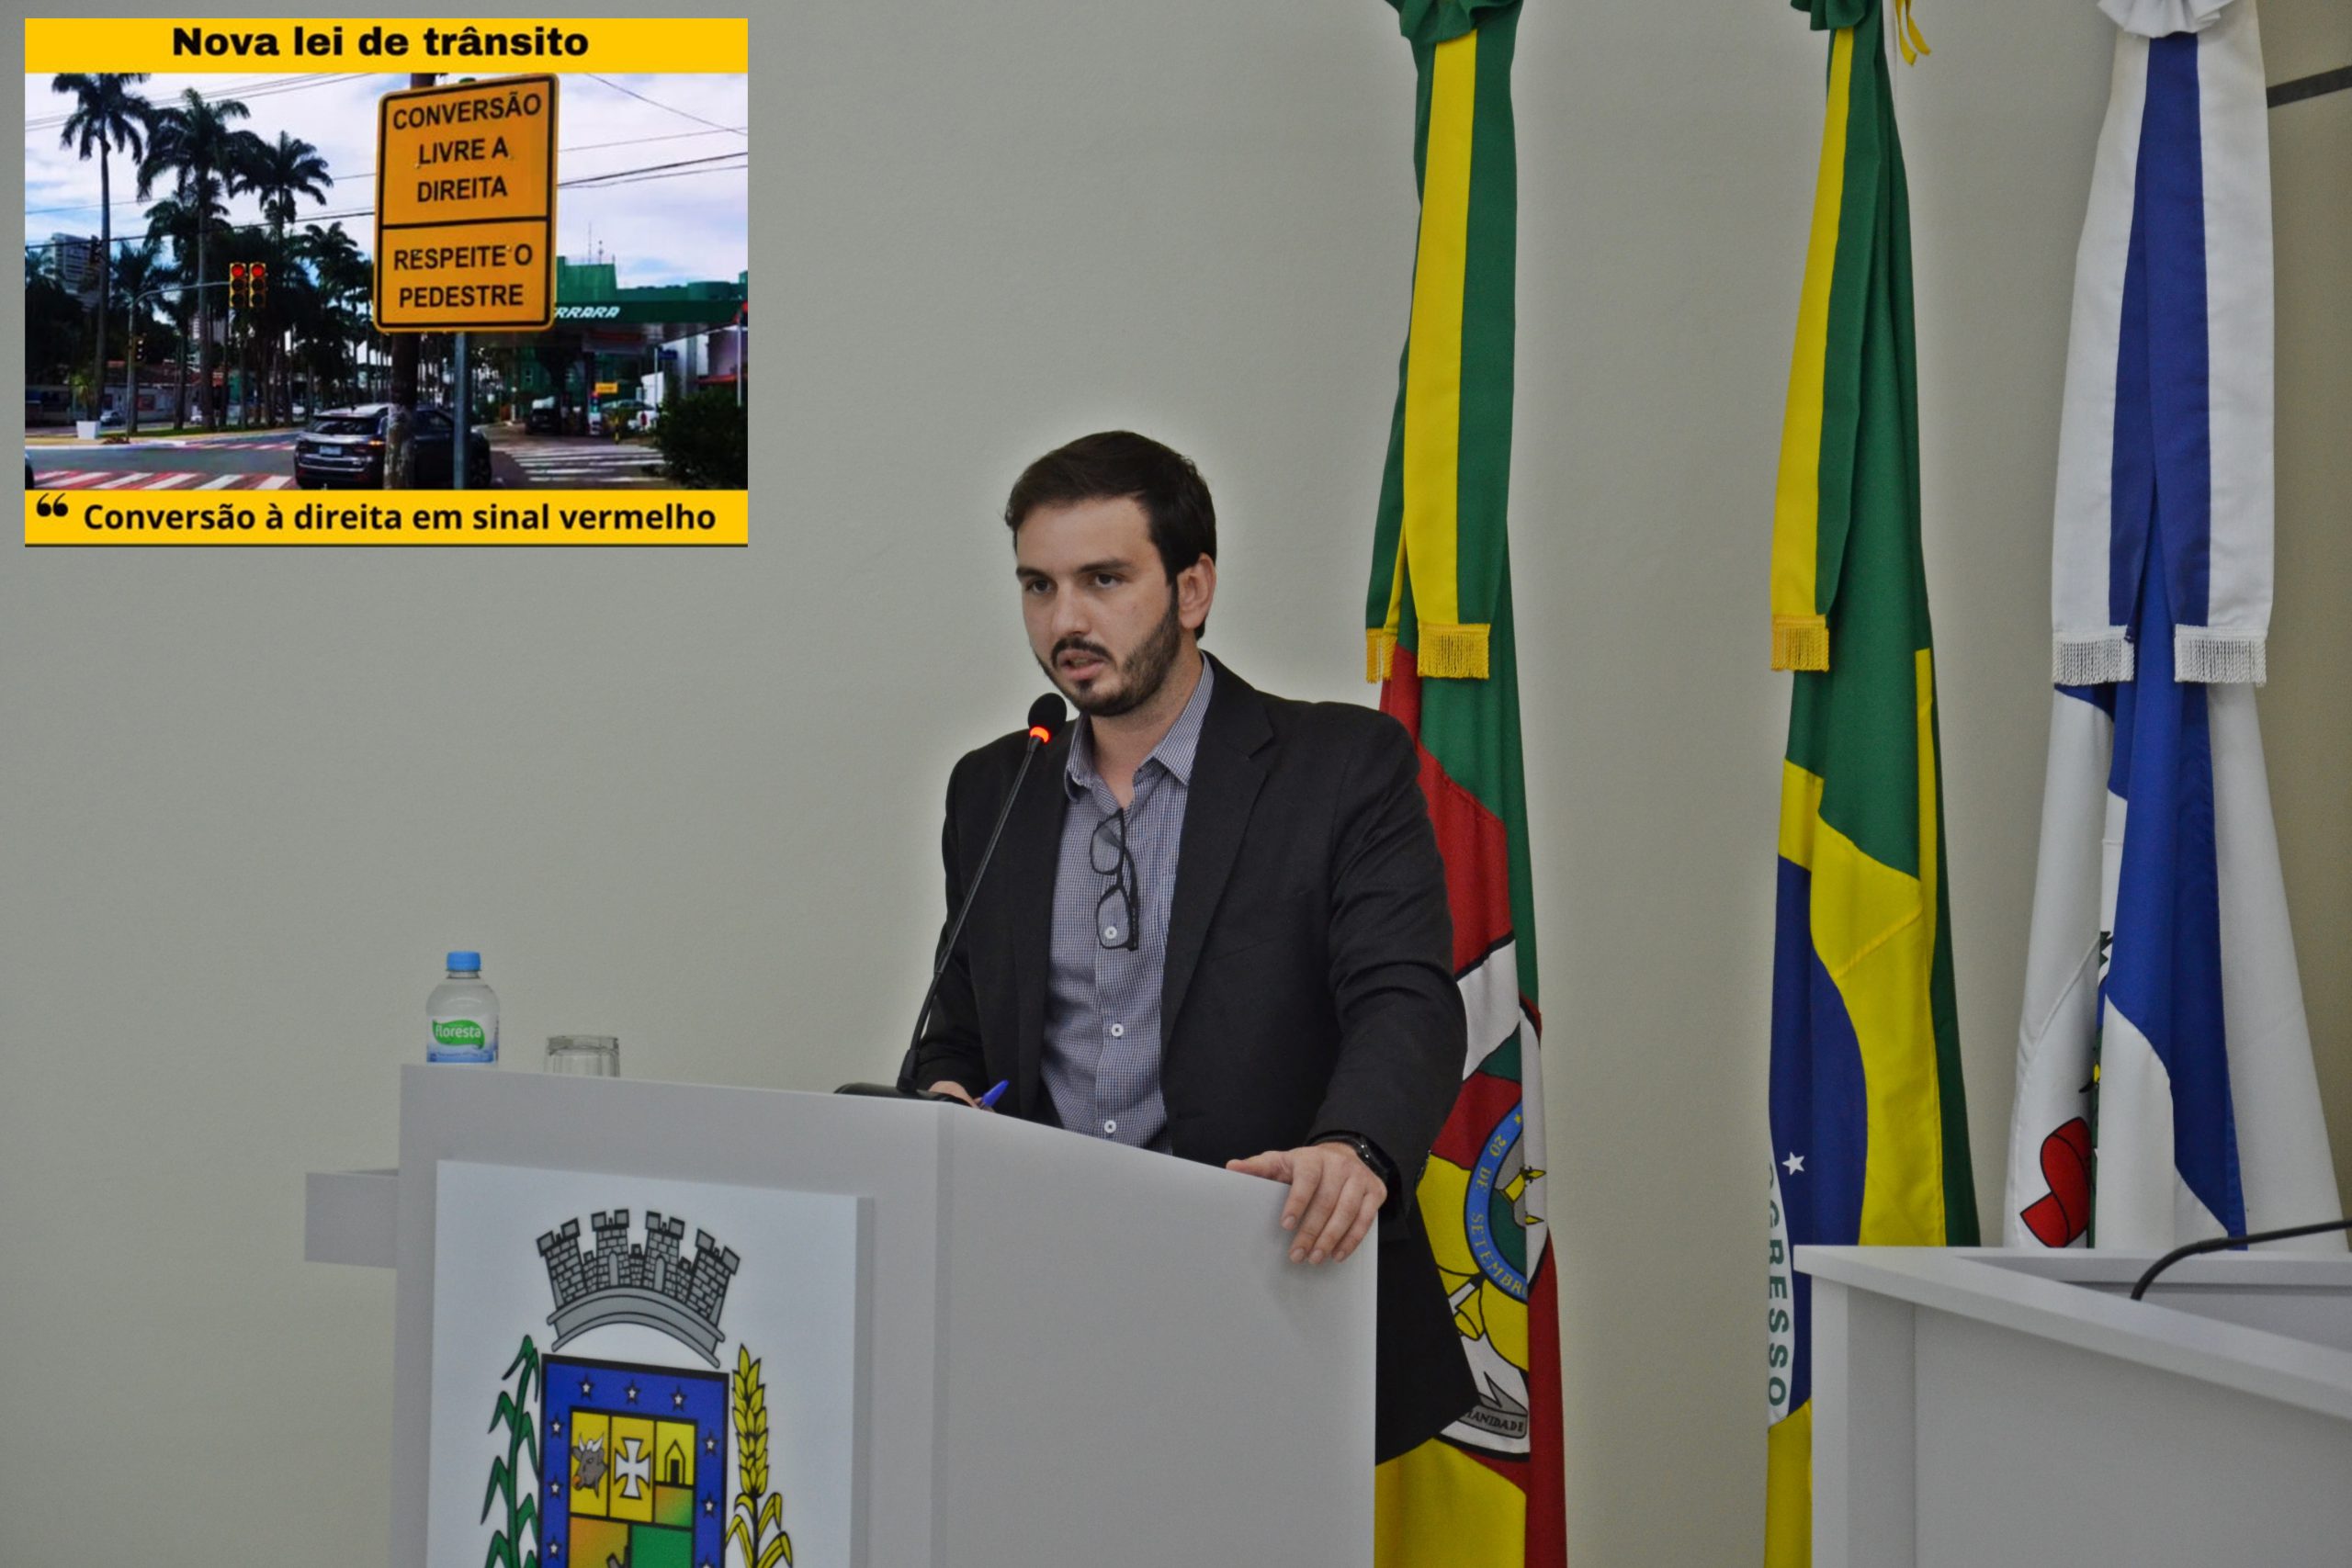 Ricardo Pires solicita estudo e implementação de placas de indicação “CONVERSÃO LIVRE À DIREITA NO SEMÁFORO VERMELHO”